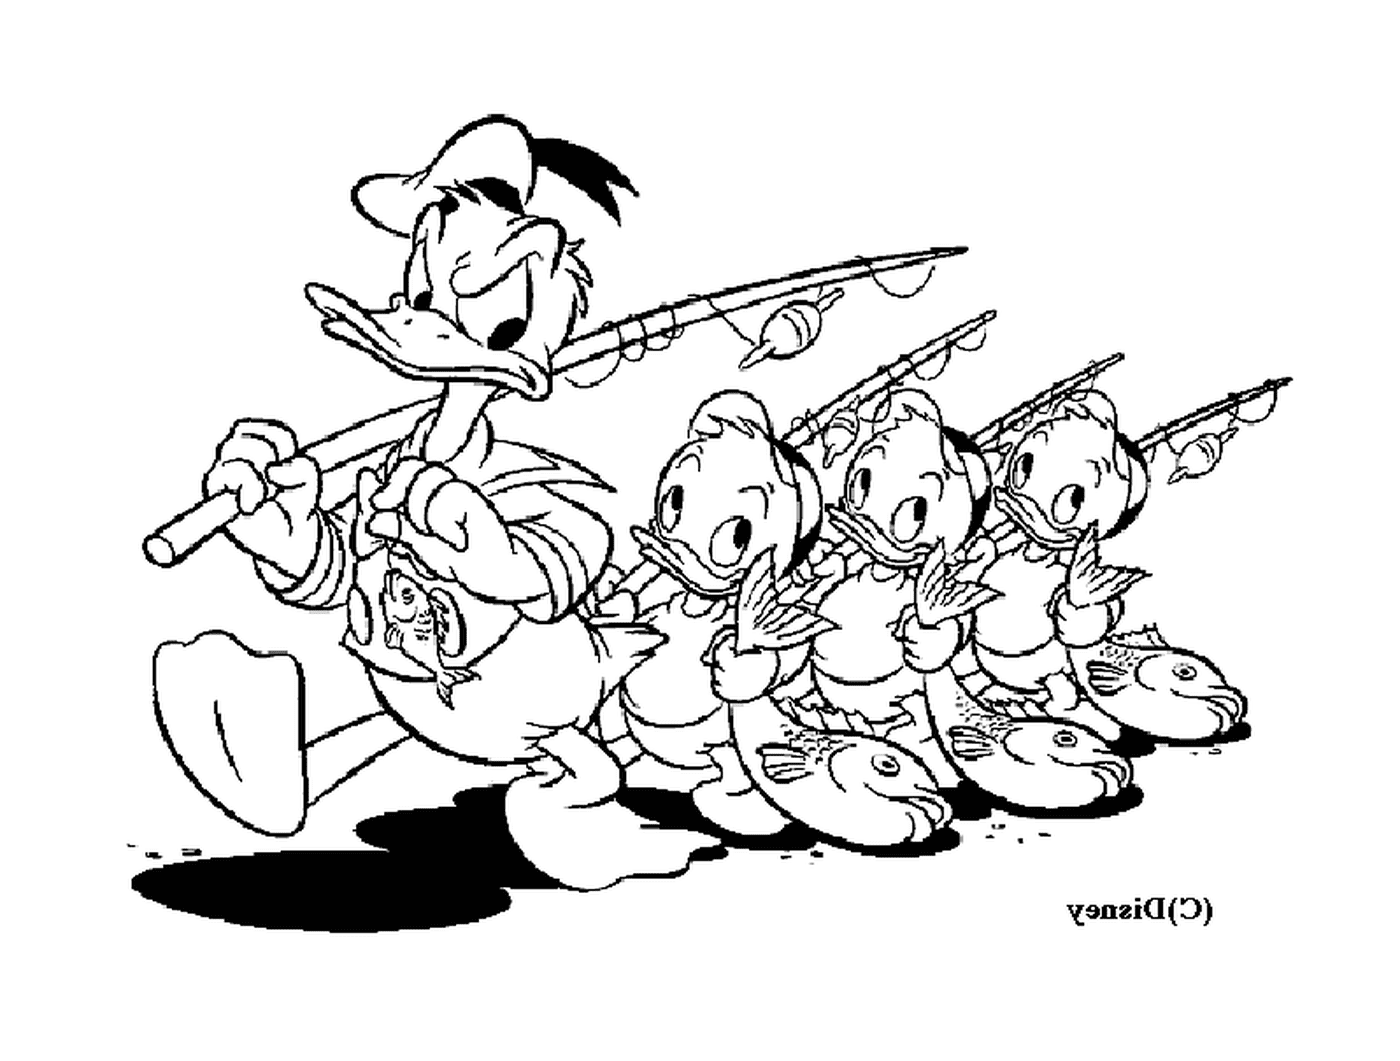  Donald e i suoi nipoti pescano con gioia 